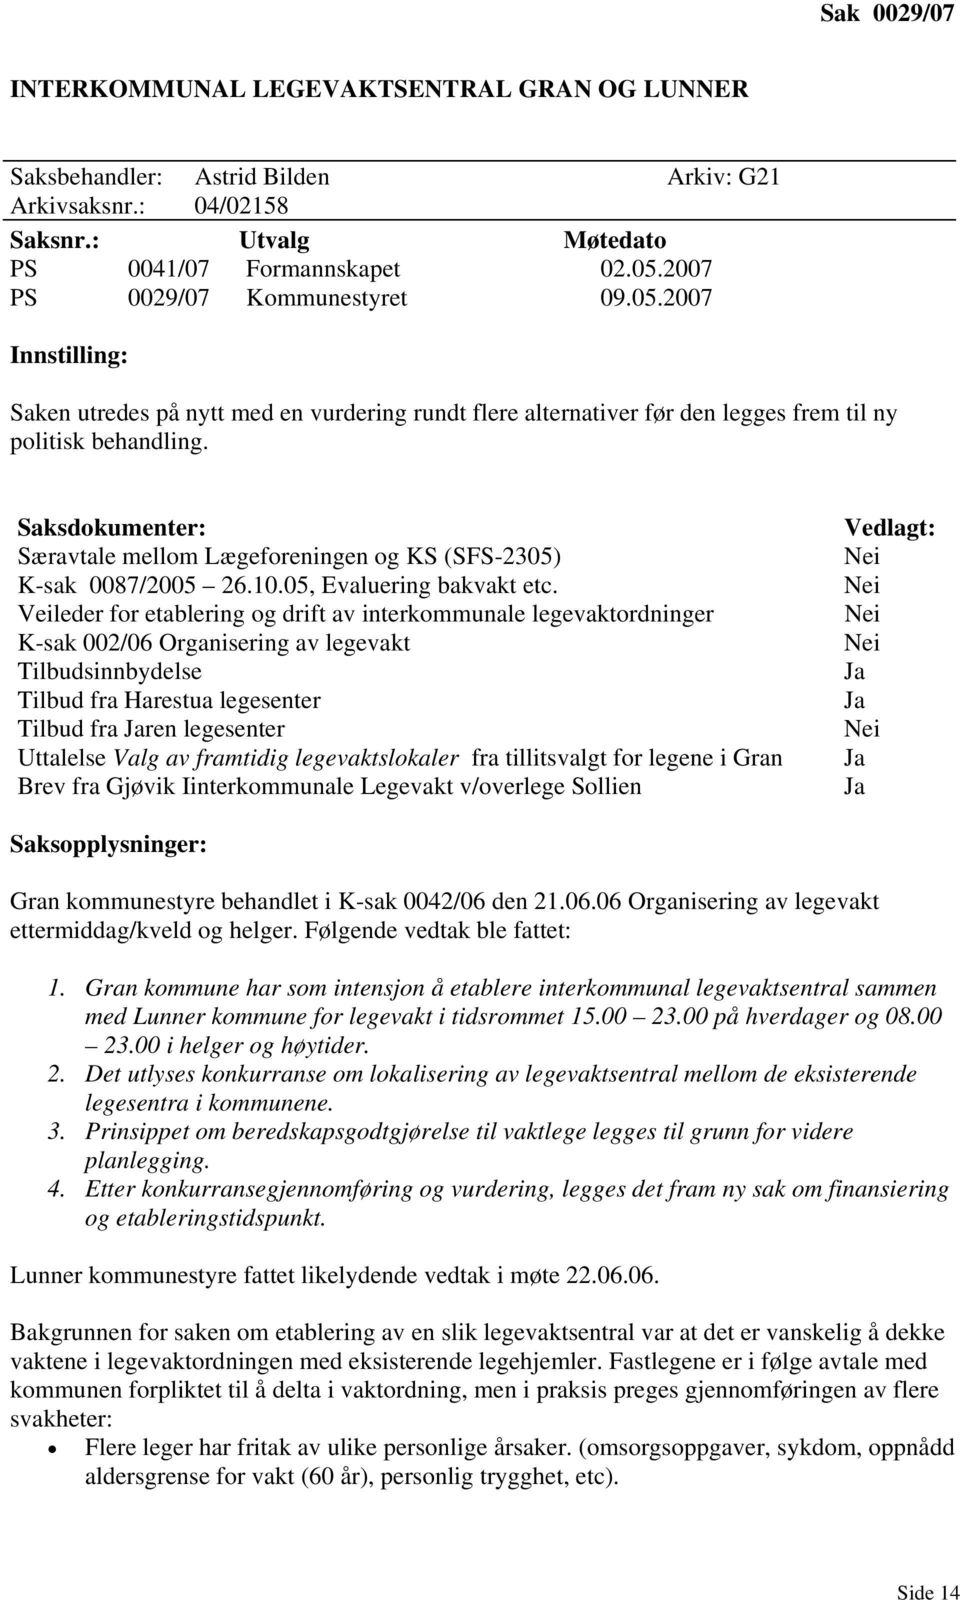 Saksdokumenter: Særavtale mellom Lægeforeningen og KS (SFS-2305) K-sak 0087/2005 26.10.05, Evaluering bakvakt etc.